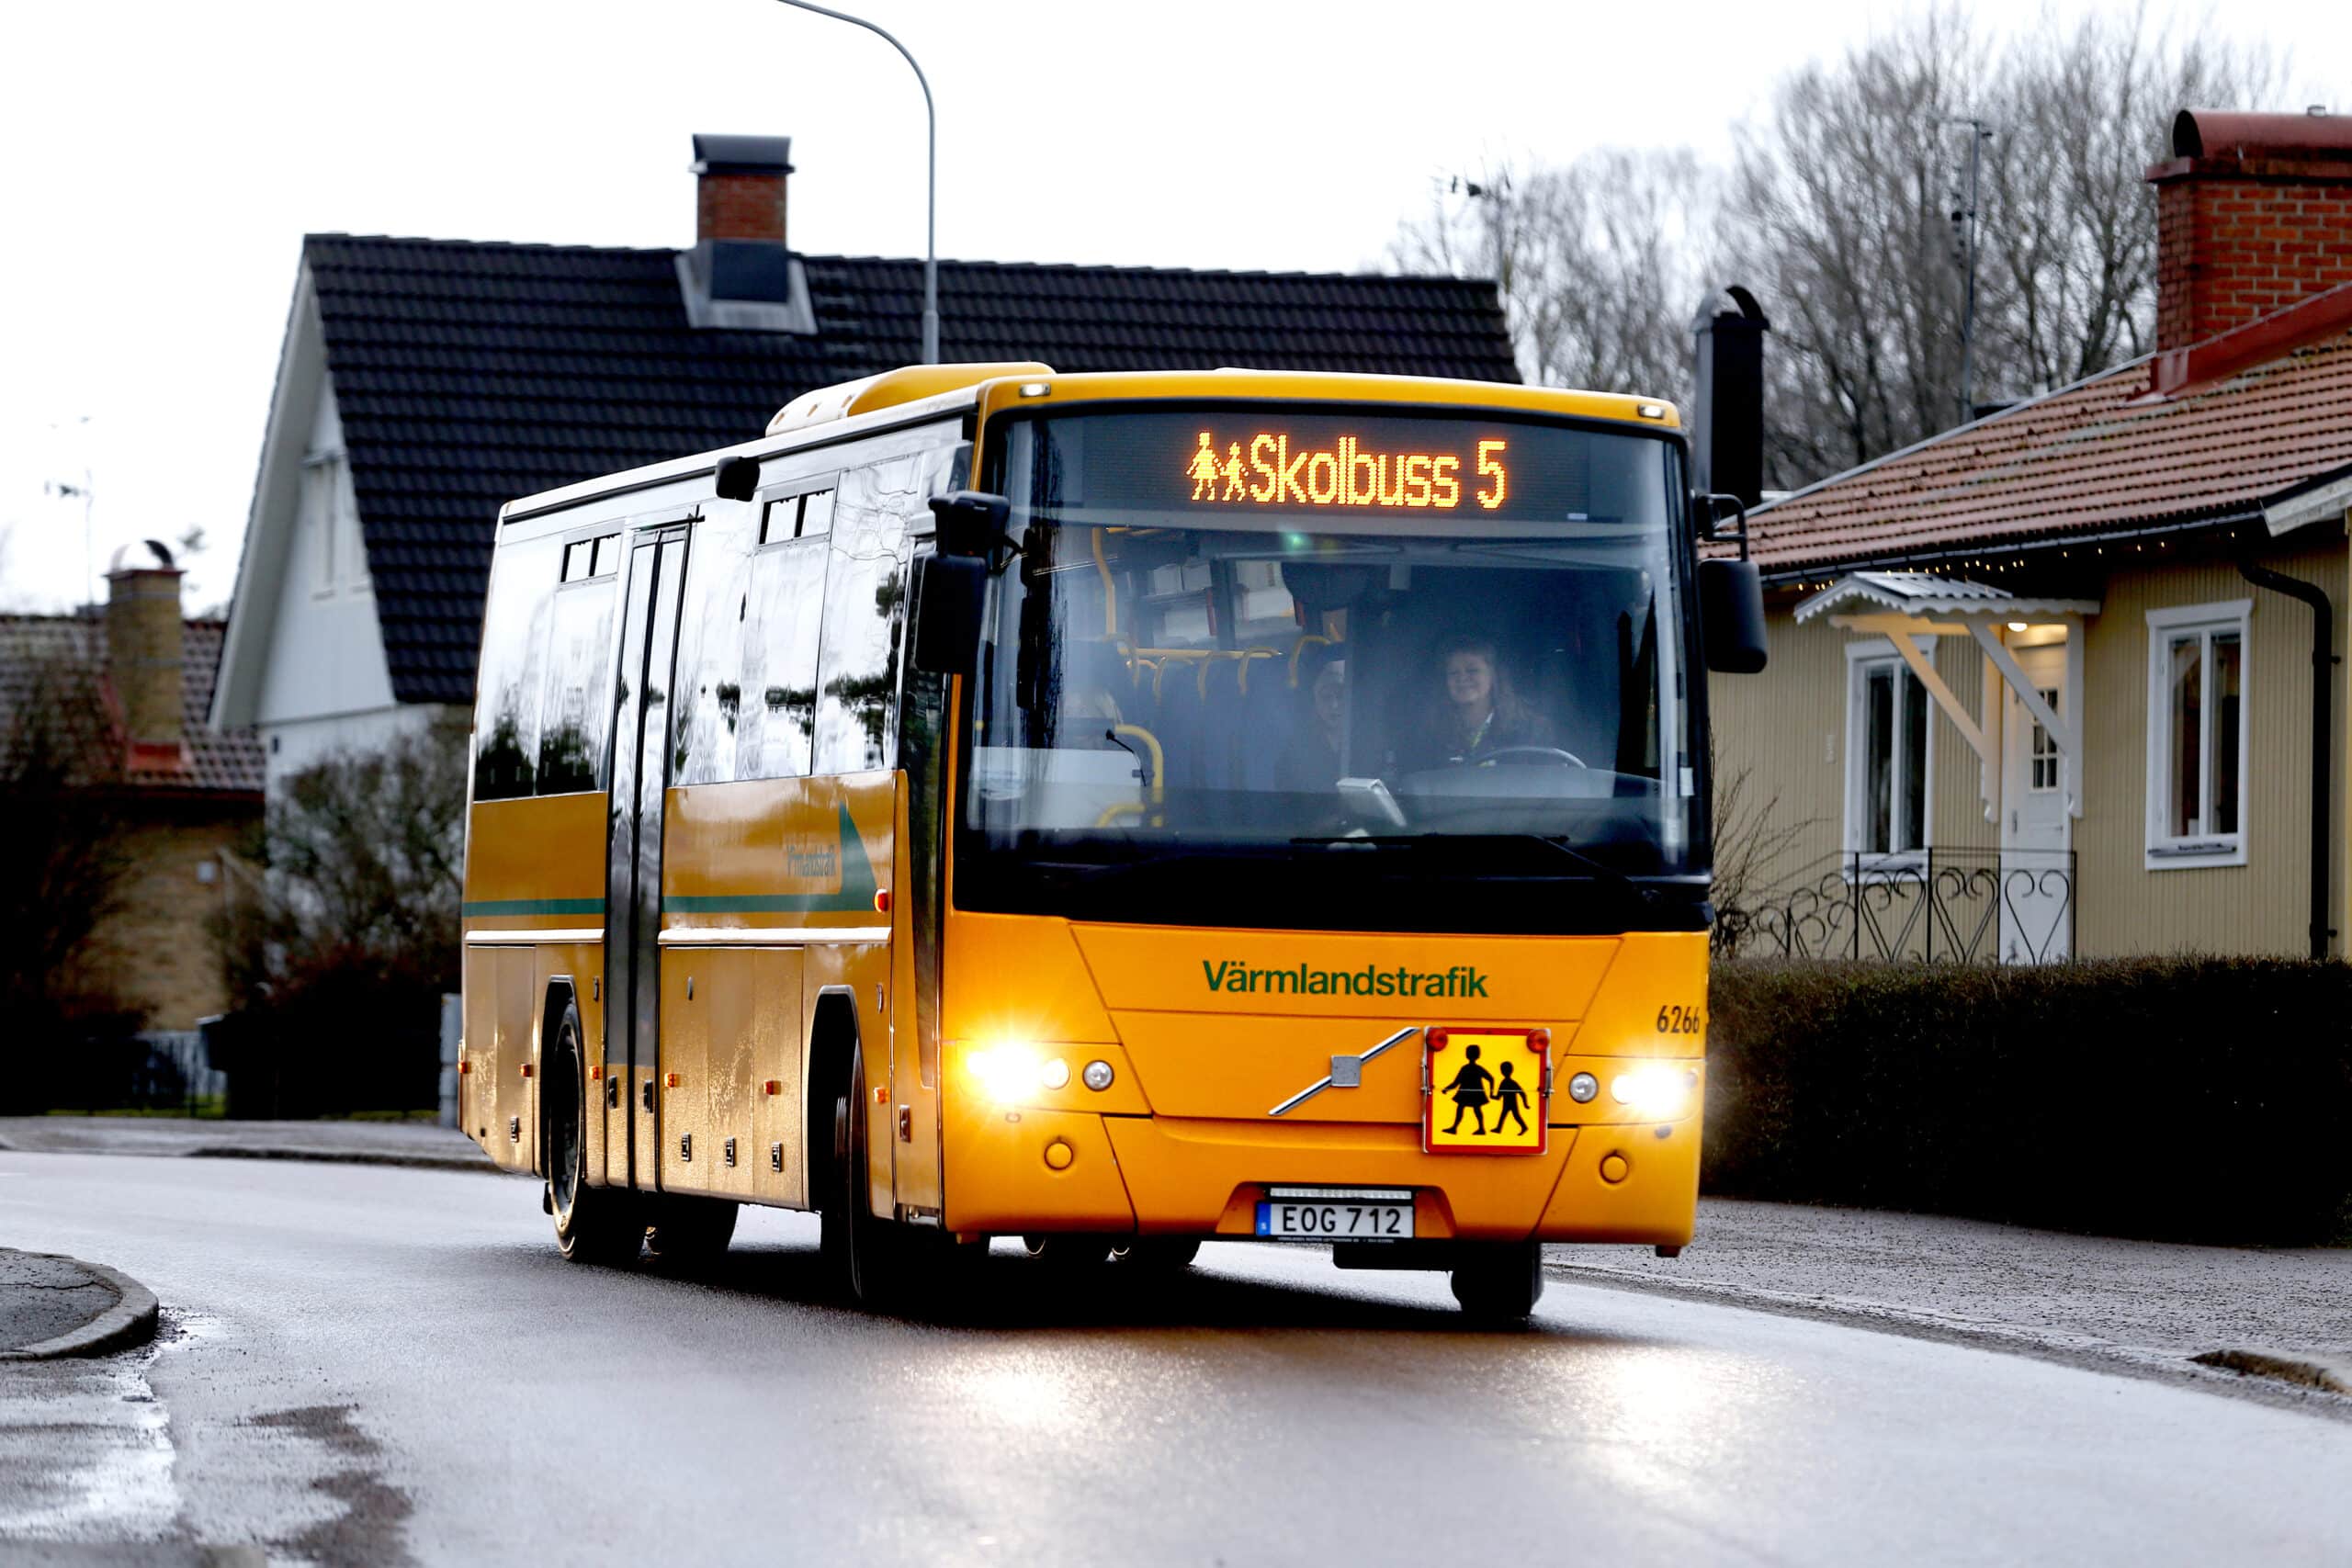 Värmlandstrafikbuss med texten Skolbuss 5.